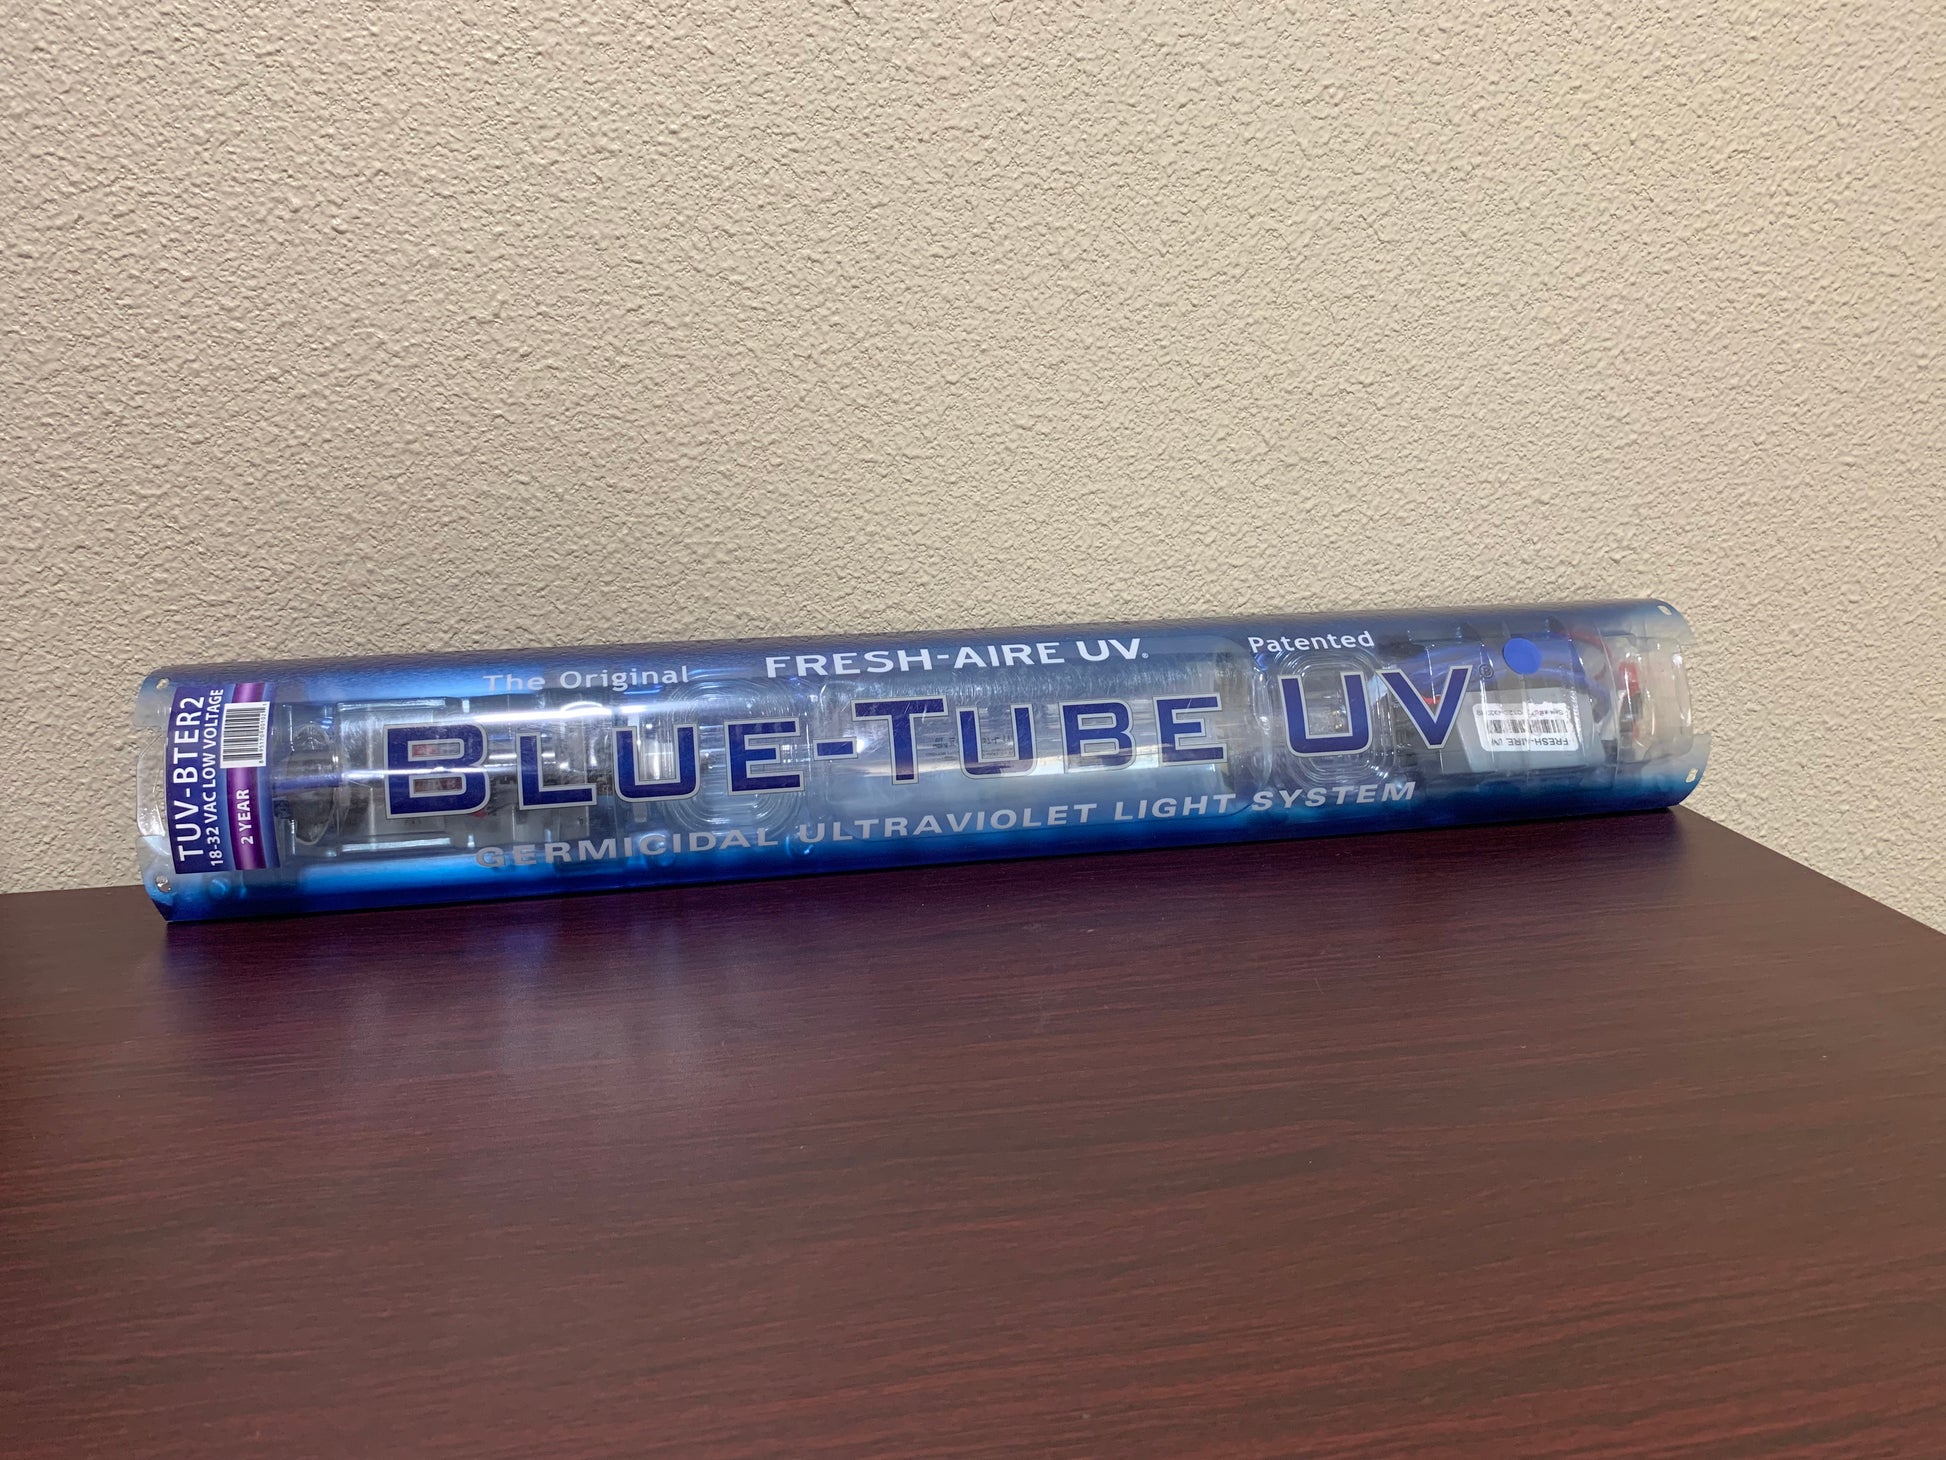 BLUE-TUBE UV 2-YEAR 18-32V LIGHT